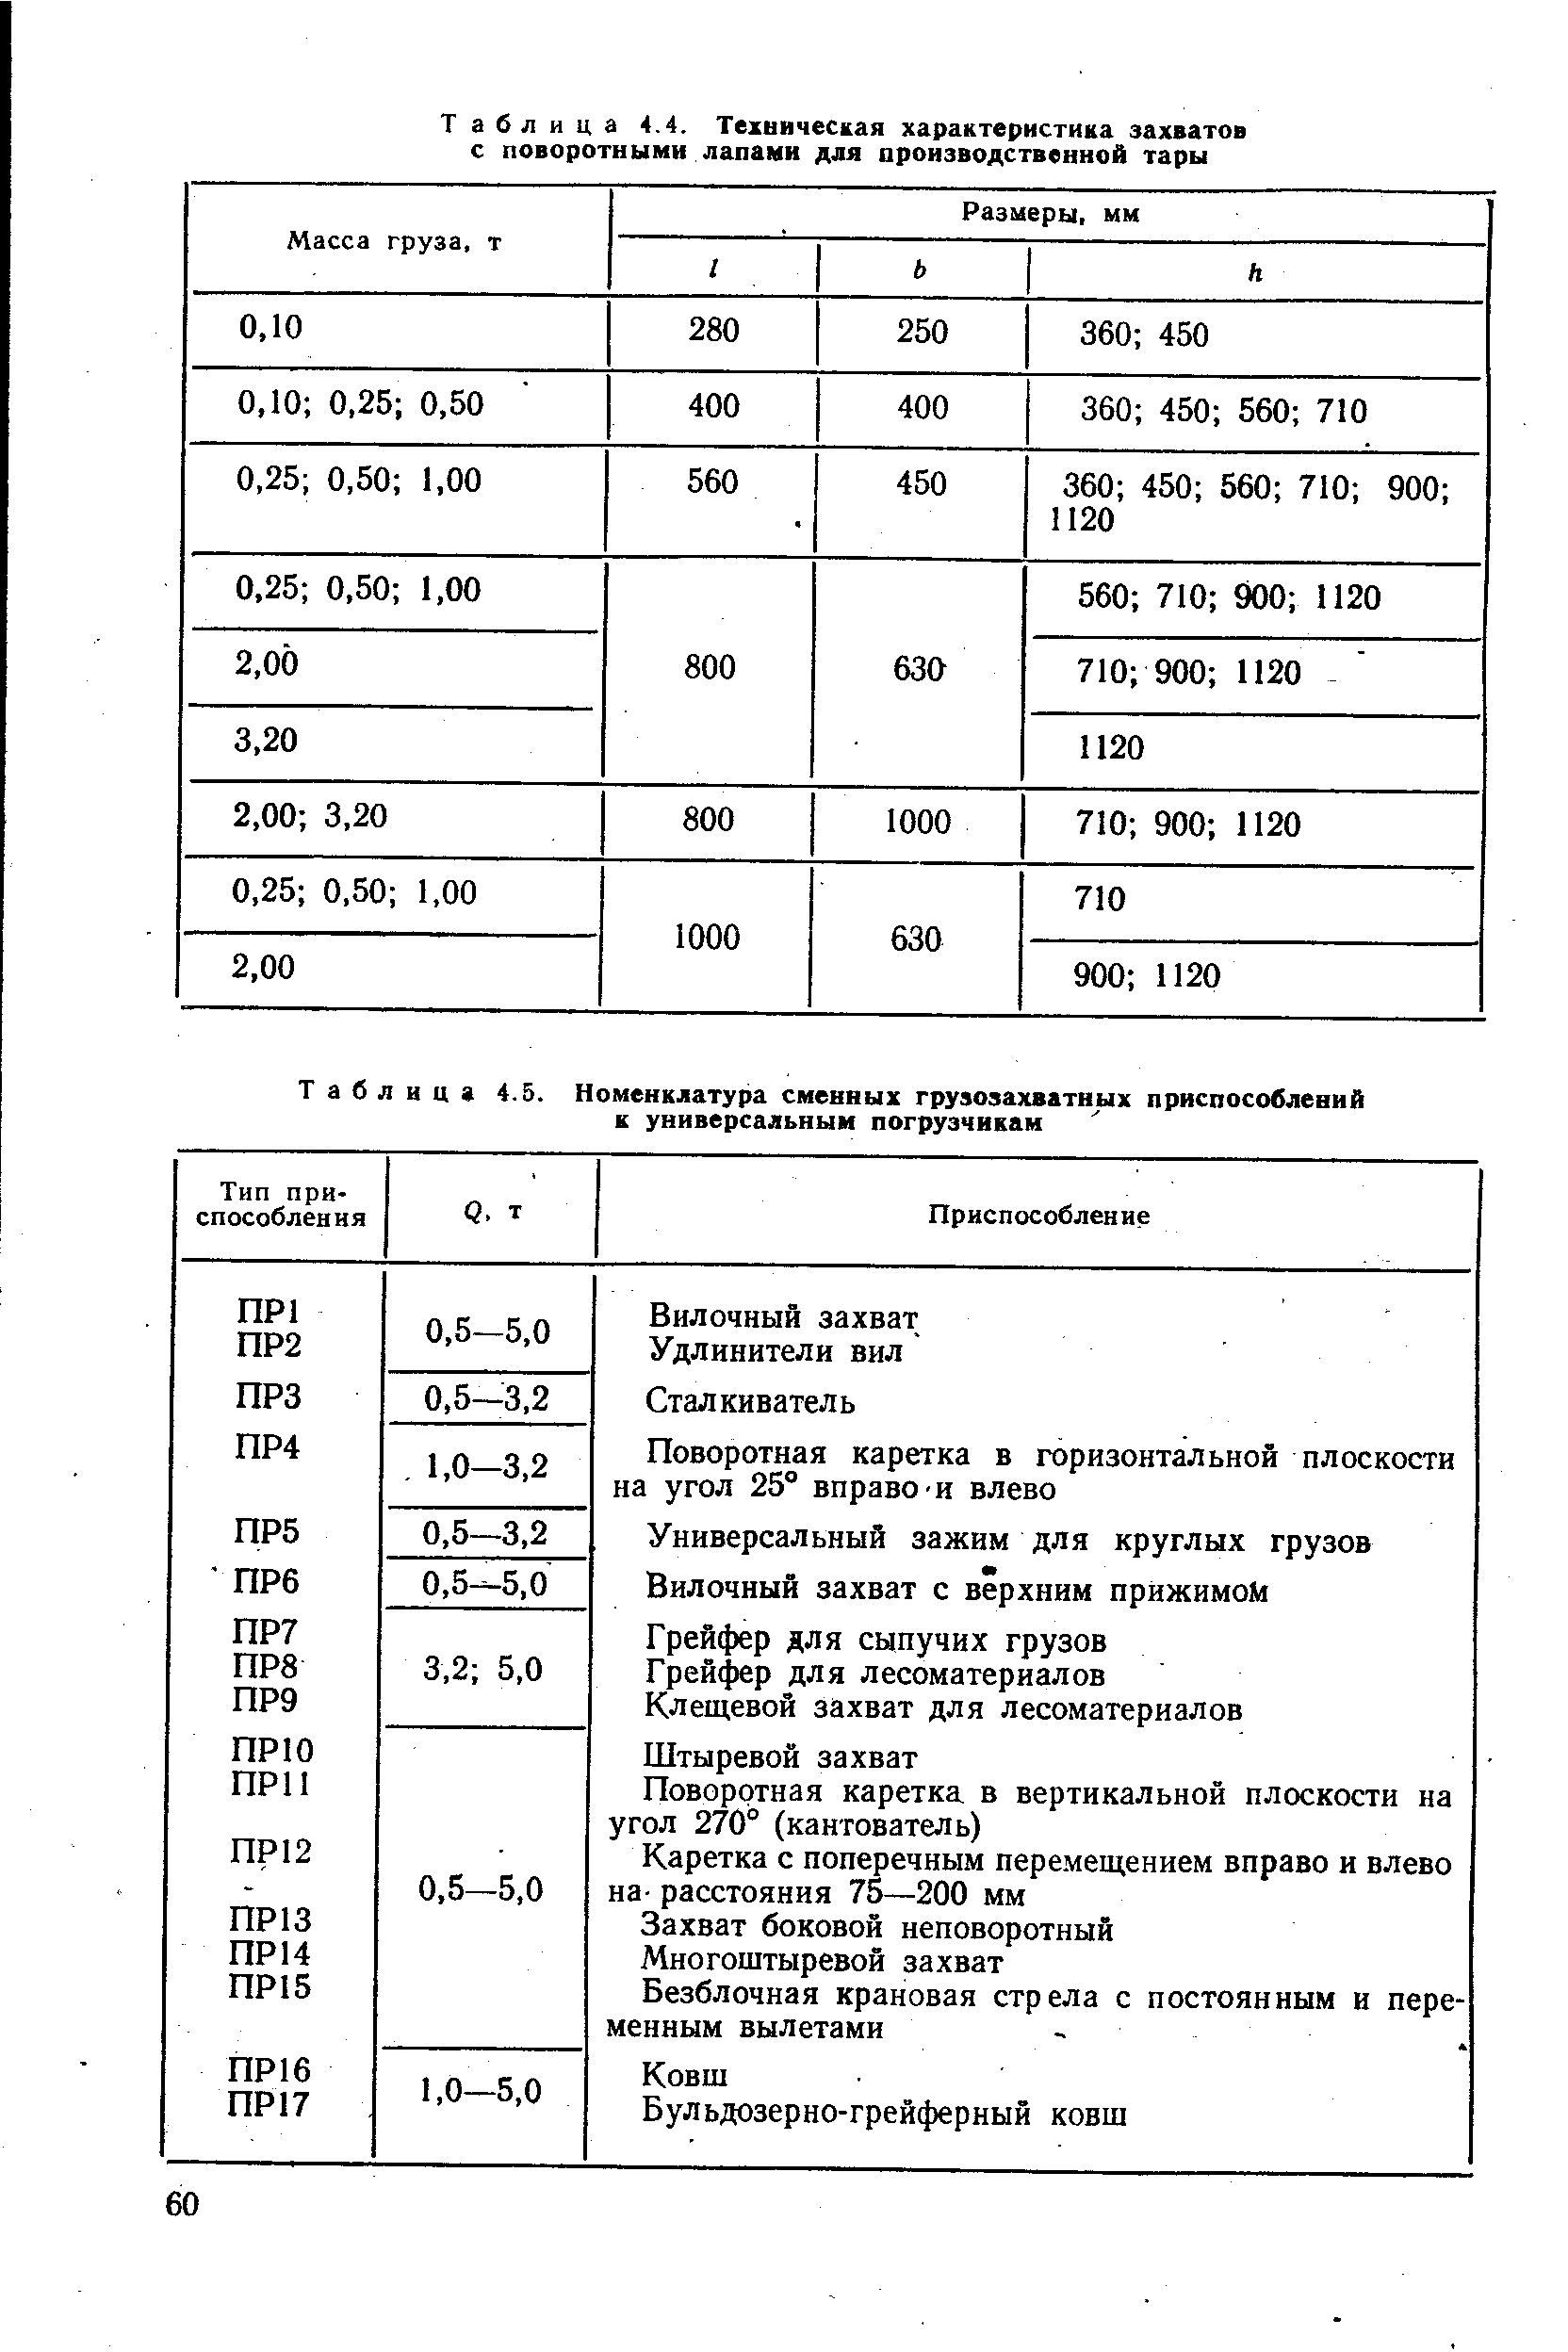 Таблица 4.5. Номенклатура сменных грузозахватных приспособлений к универсальным погрузчикам
